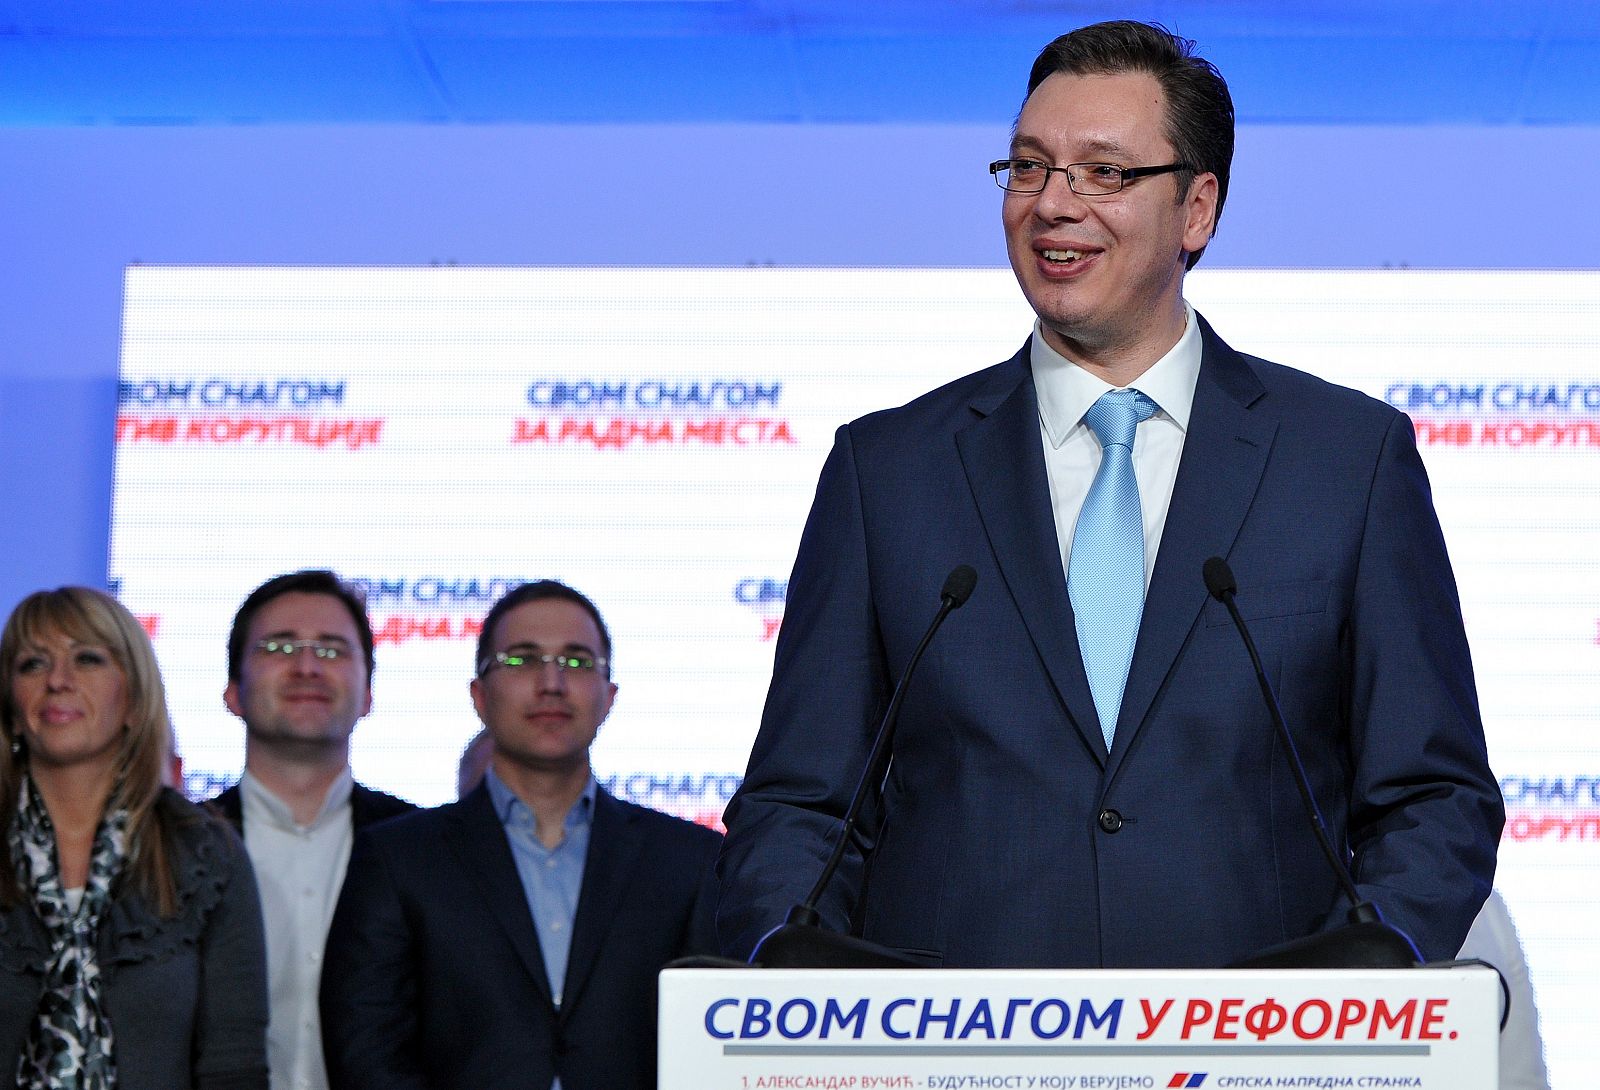 El primer ministro electo de Serbia, Aleksandar Vucic, durante la rueda de prensa en la sede de su partido tras conocerse los primeros resultados de las elecciones legislativas que le otorgan una amplia mayoría.